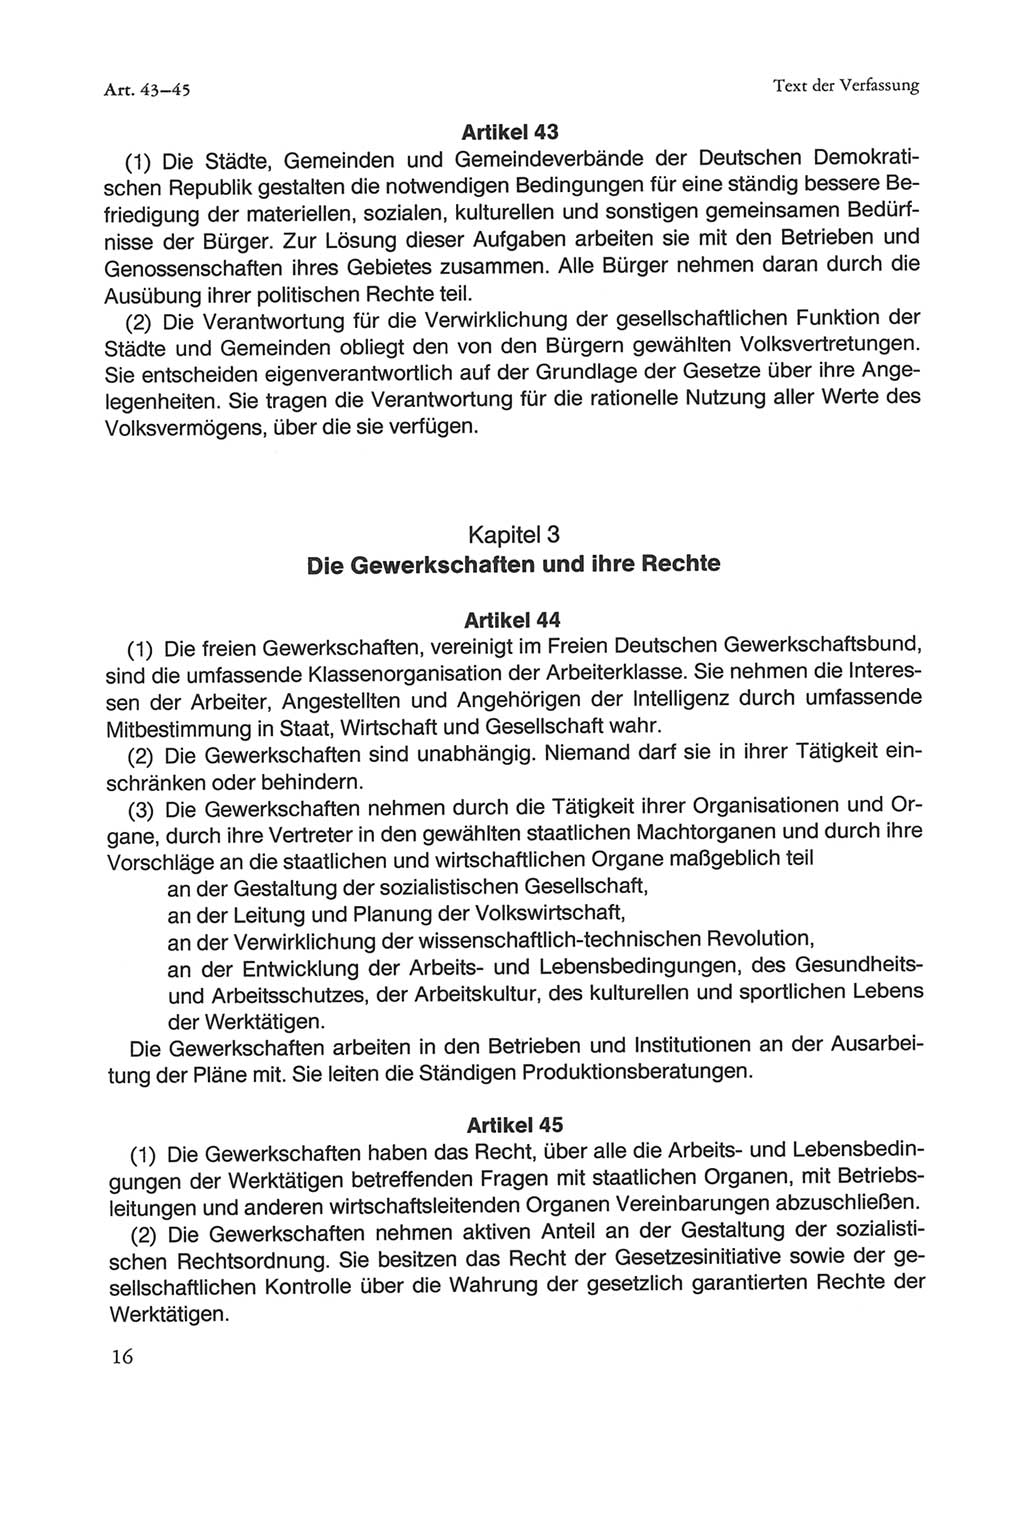 Die sozialistische Verfassung der Deutschen Demokratischen Republik (DDR), Kommentar mit einem Nachtrag 1997, Seite 16 (Soz. Verf. DDR Komm. Nachtr. 1997, S. 16)